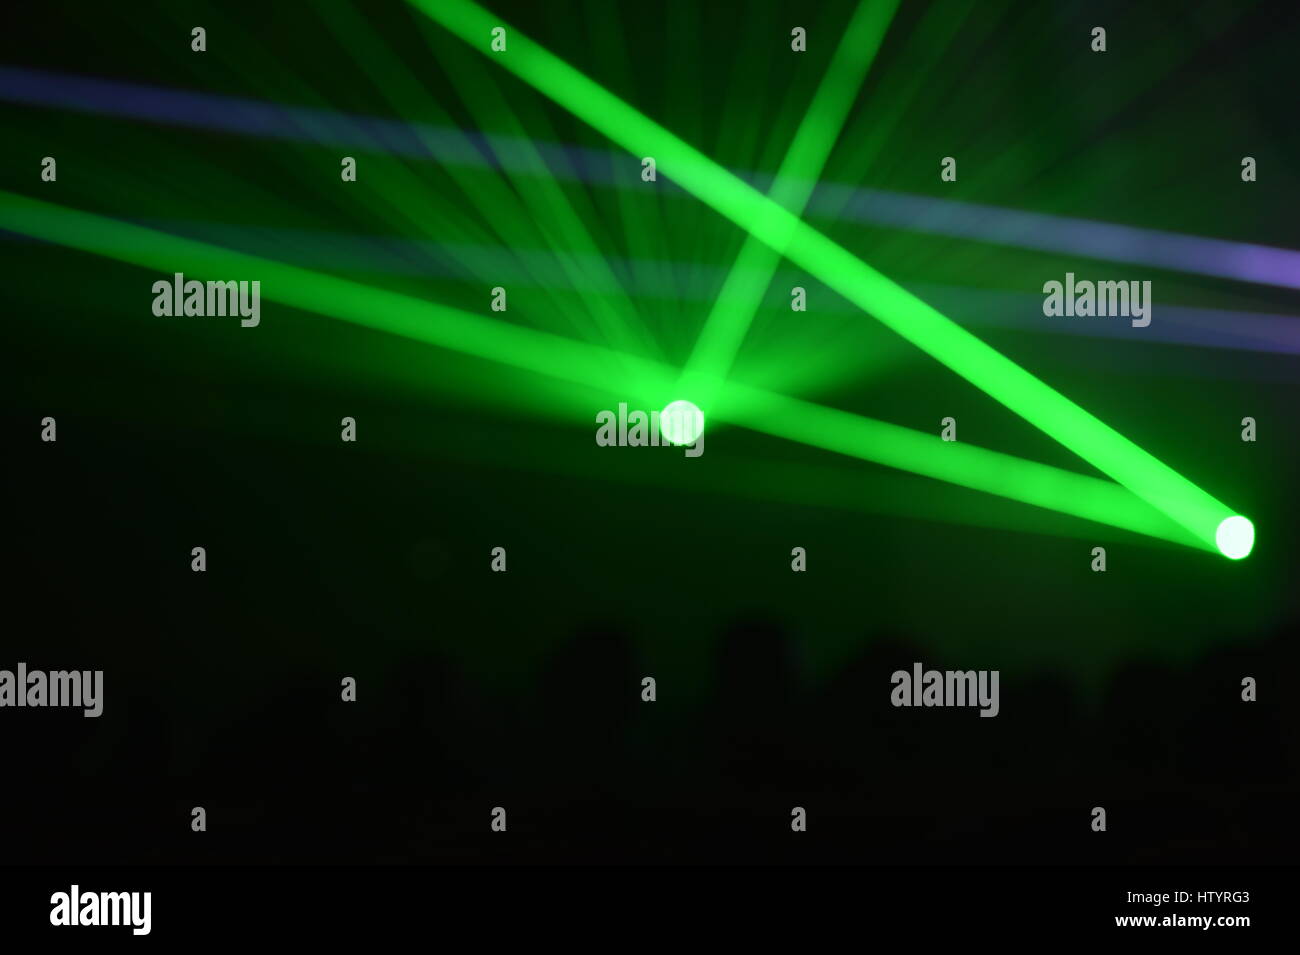 Regarder les gens méconnaissables un magnifique show laser avec lumières multicolores Banque D'Images